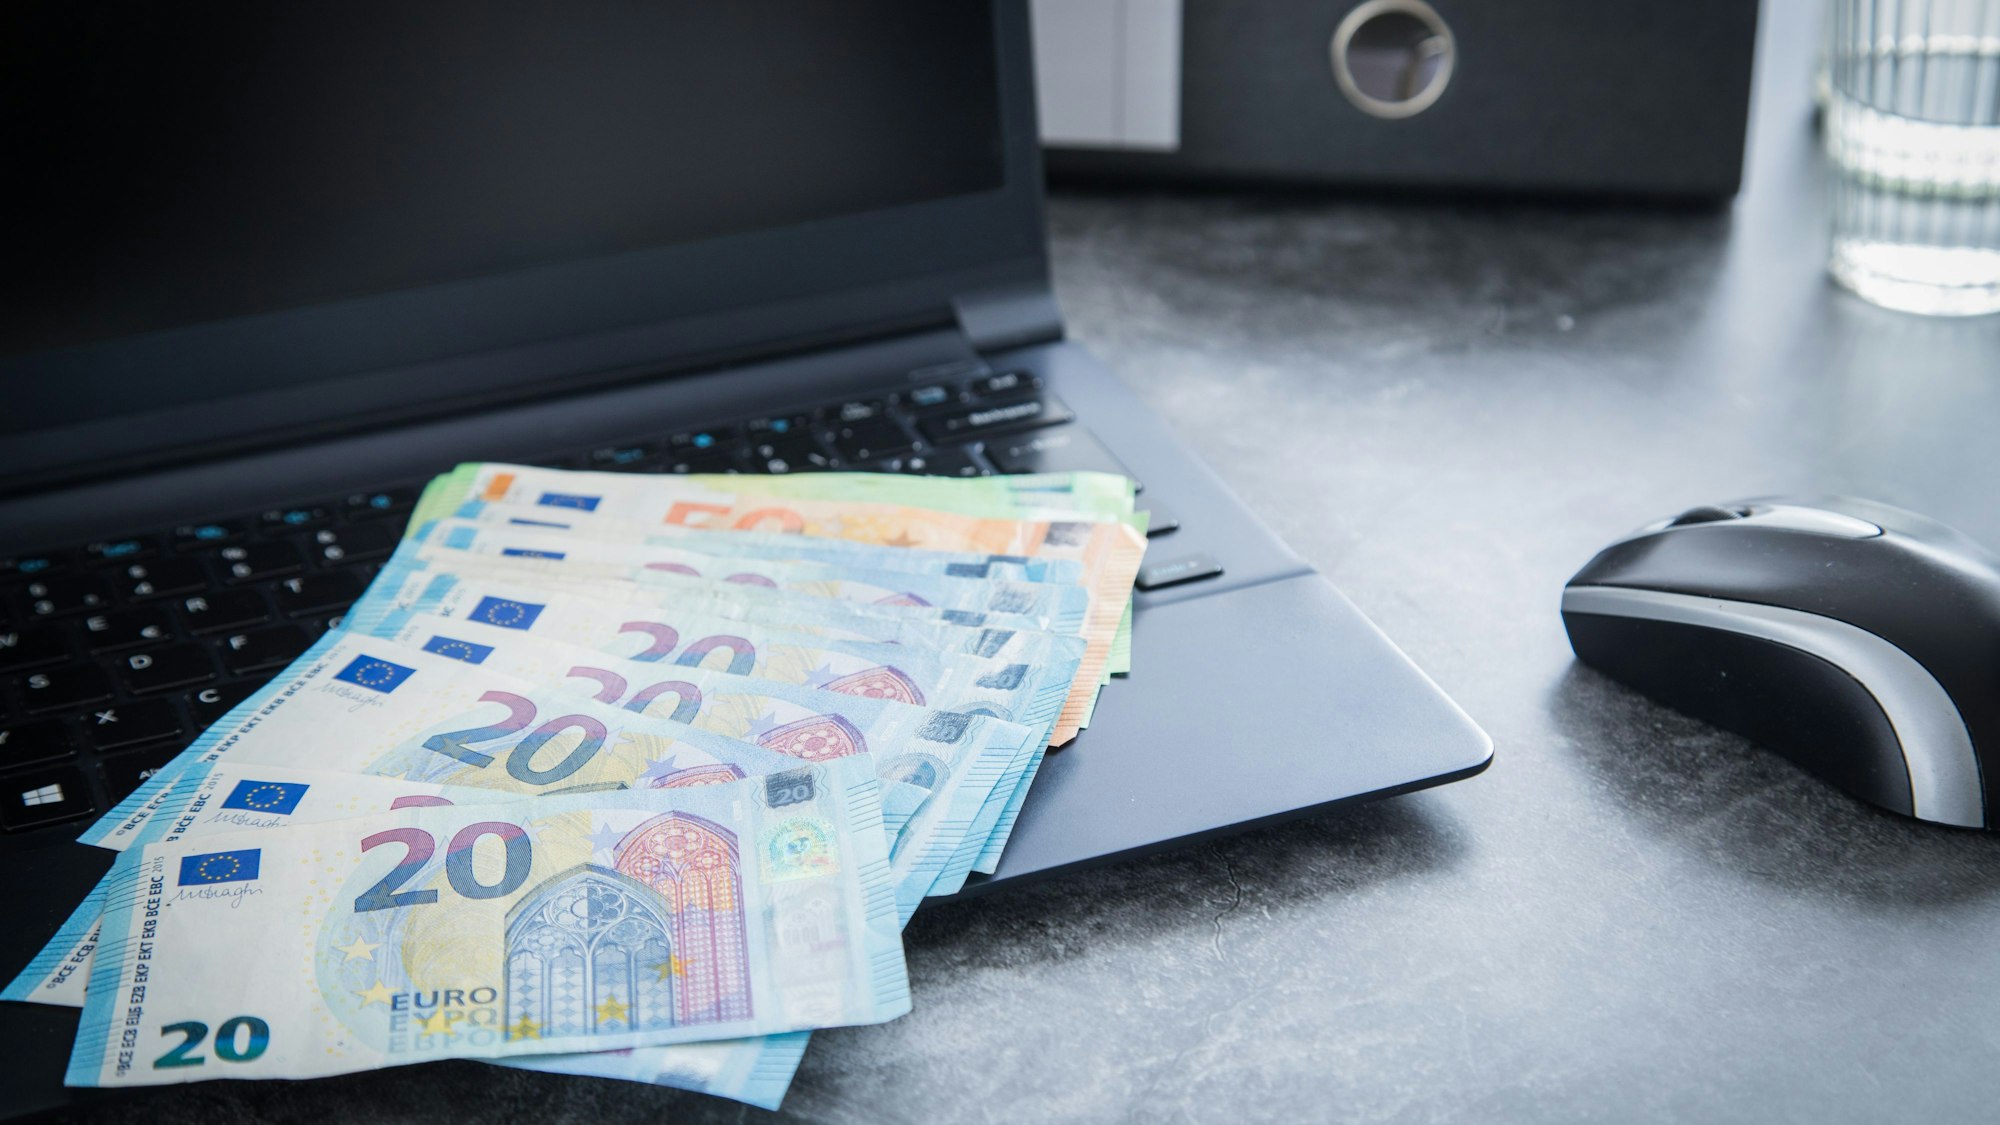 Euroscheine liegen aufgefächert auf der Tastatur eines Laptops